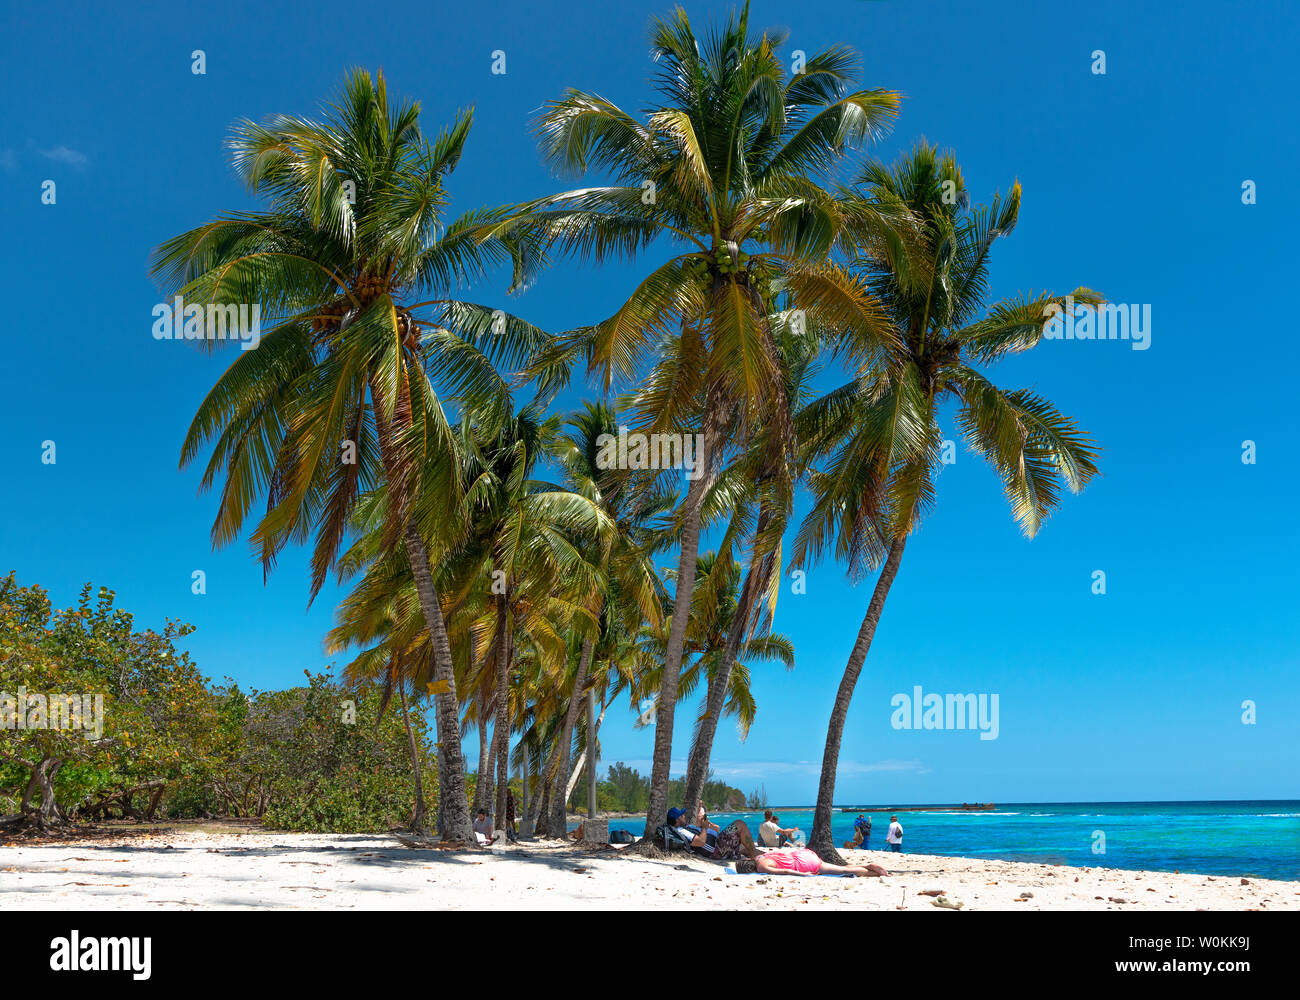 Playa Coco de Playa Giron une très belle plage de sable blanc avec une mer turquoise et des palmiers se balançant dans la province de Pinar del Rio, Cuba, Caraïbes Banque D'Images